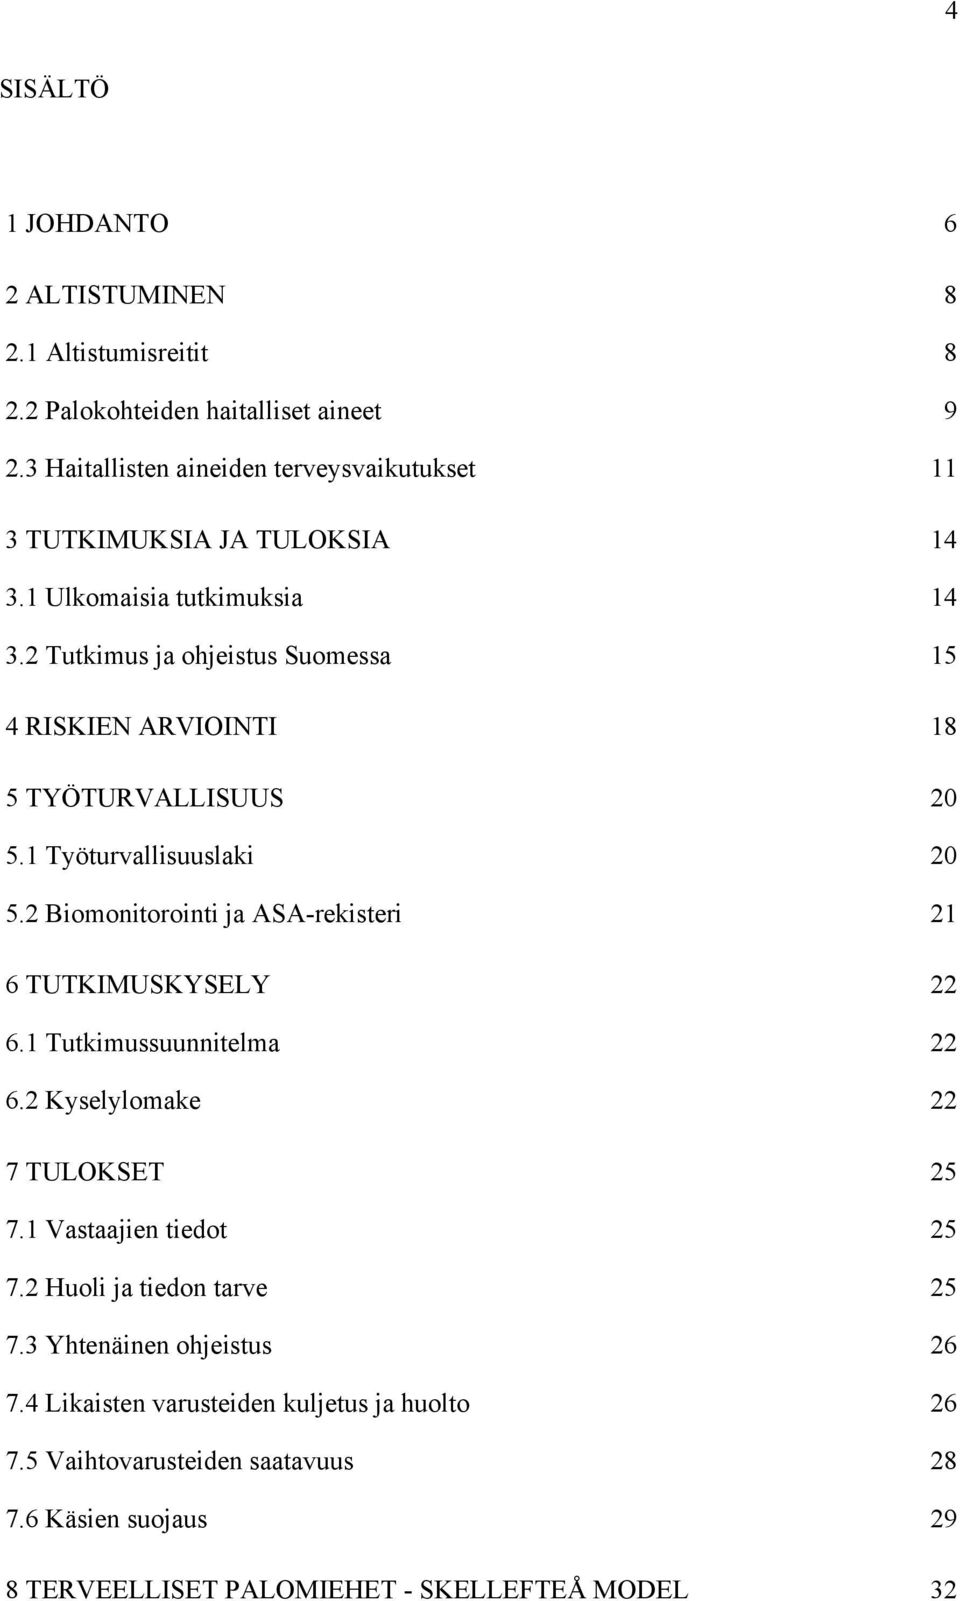 2 Tutkimus ja ohjeistus Suomessa 15 4 RISKIEN ARVIOINTI 18 5 TYÖTURVALLISUUS 20 5.1 Työturvallisuuslaki 20 5.2 Biomonitorointi ja ASA-rekisteri 21 6 TUTKIMUSKYSELY 22 6.